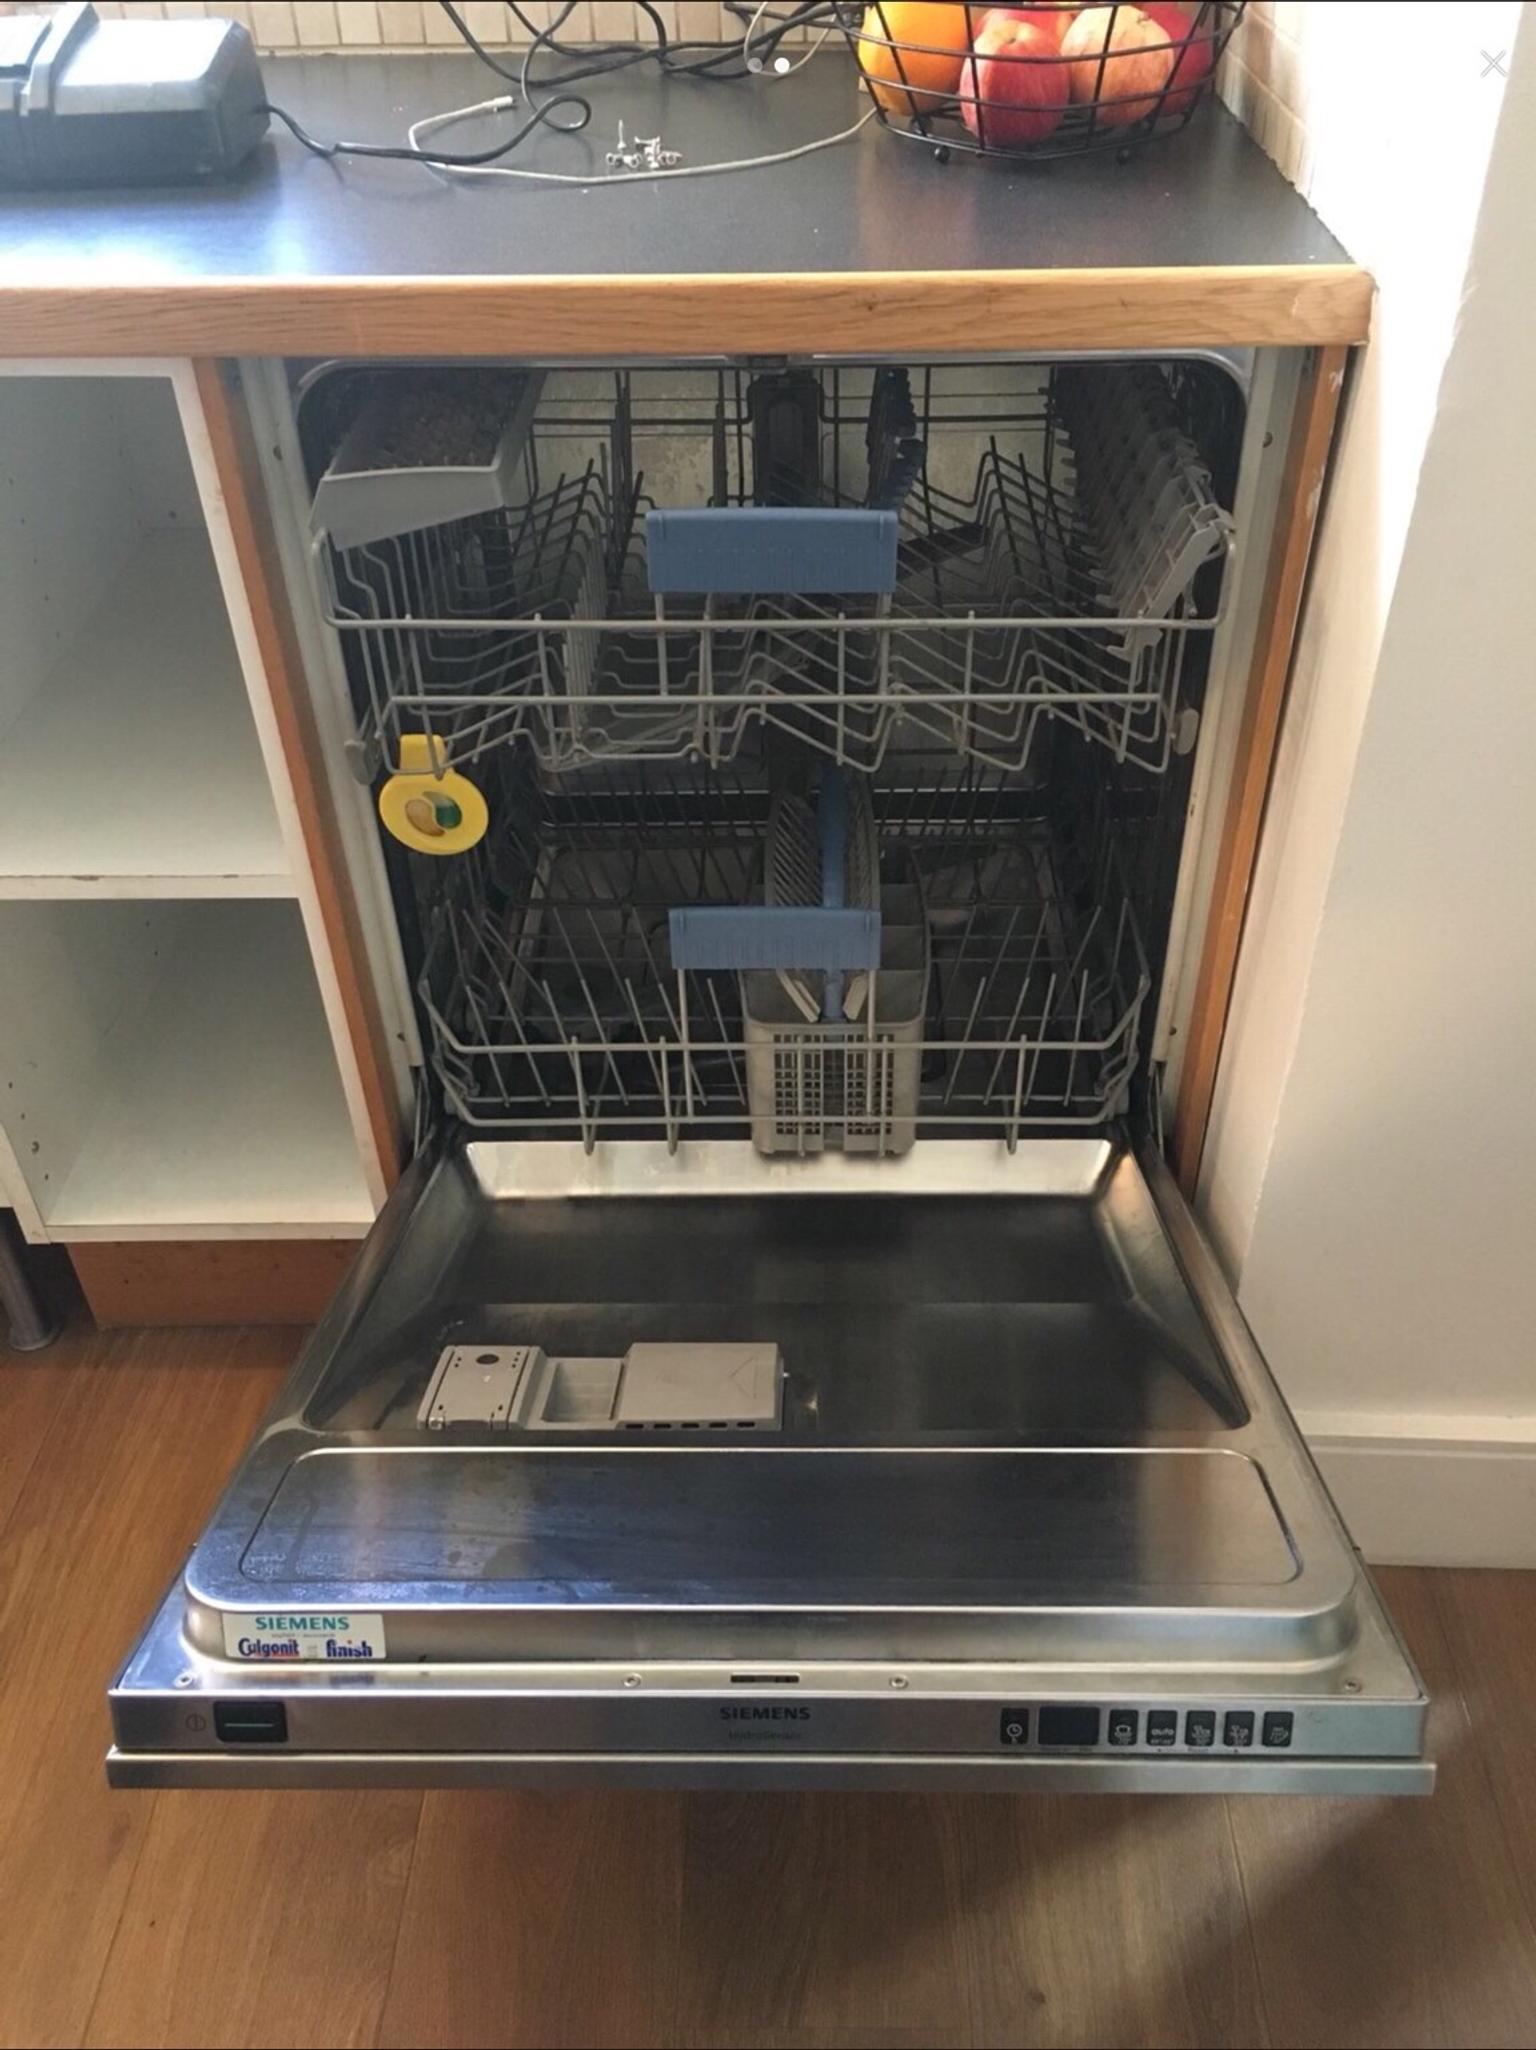 siemens dishwasher integrated